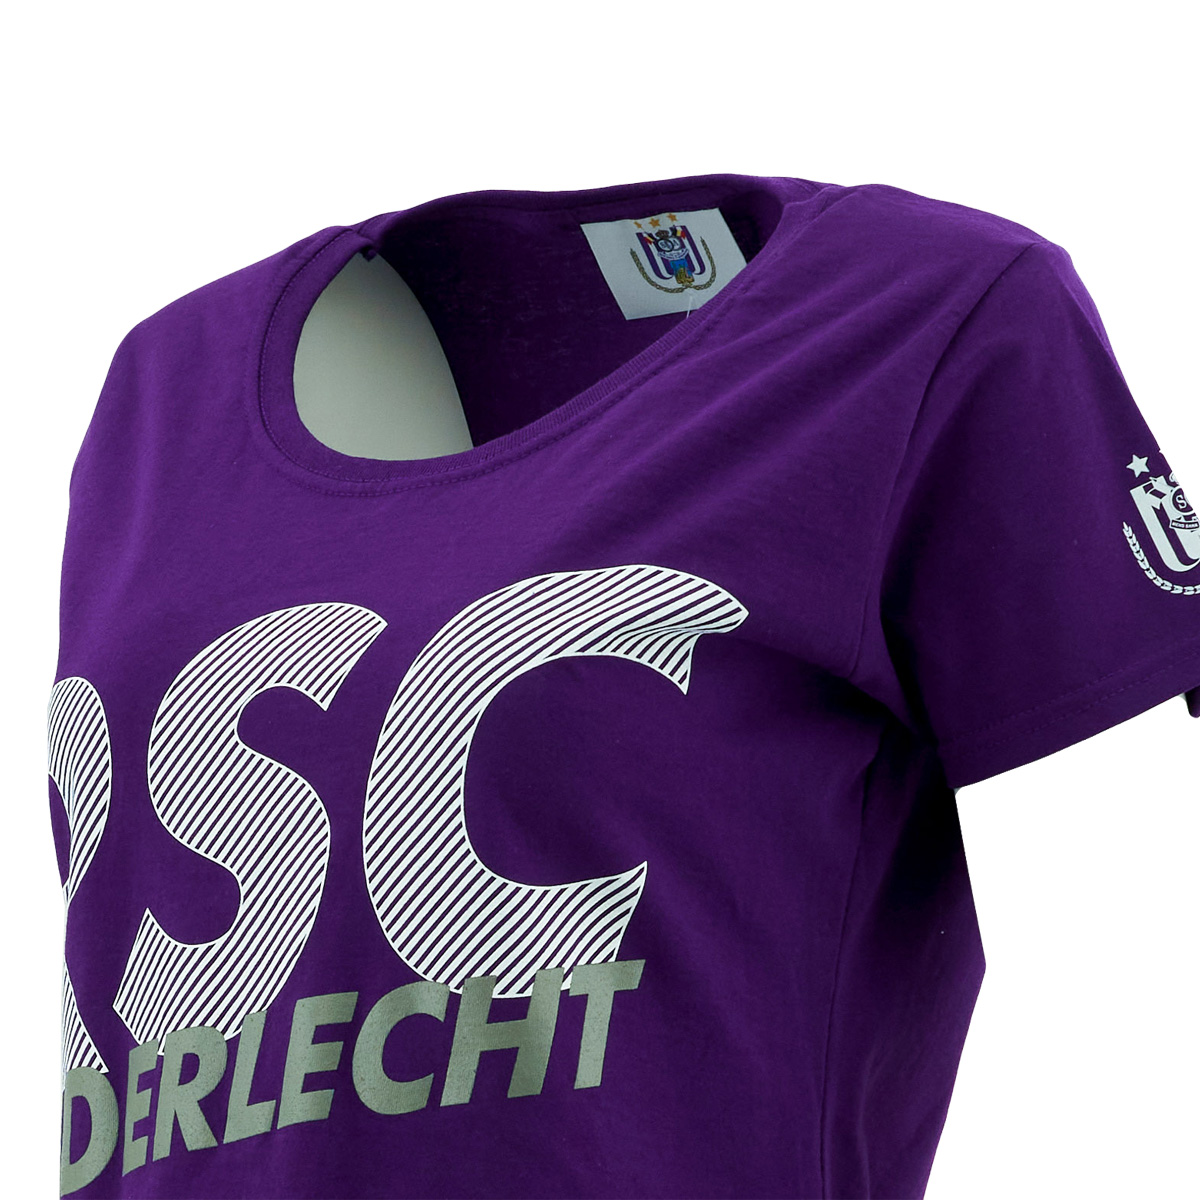 RSCA Match wear - The official Fanshop of RSC Anderlecht